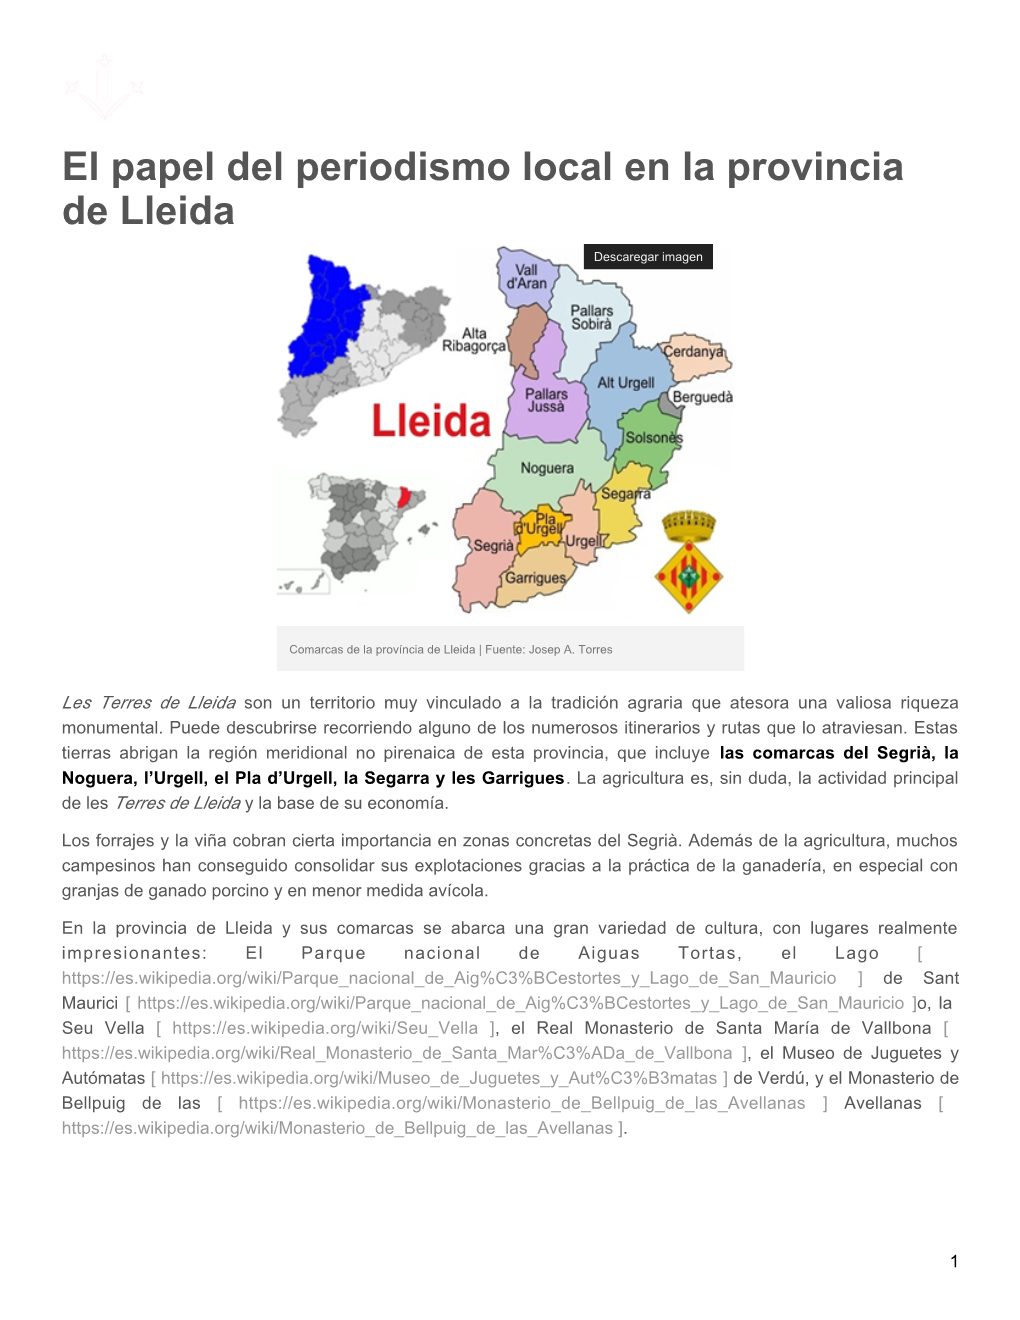 El Papel Del Periodismo Local En La Provincia De Lleida